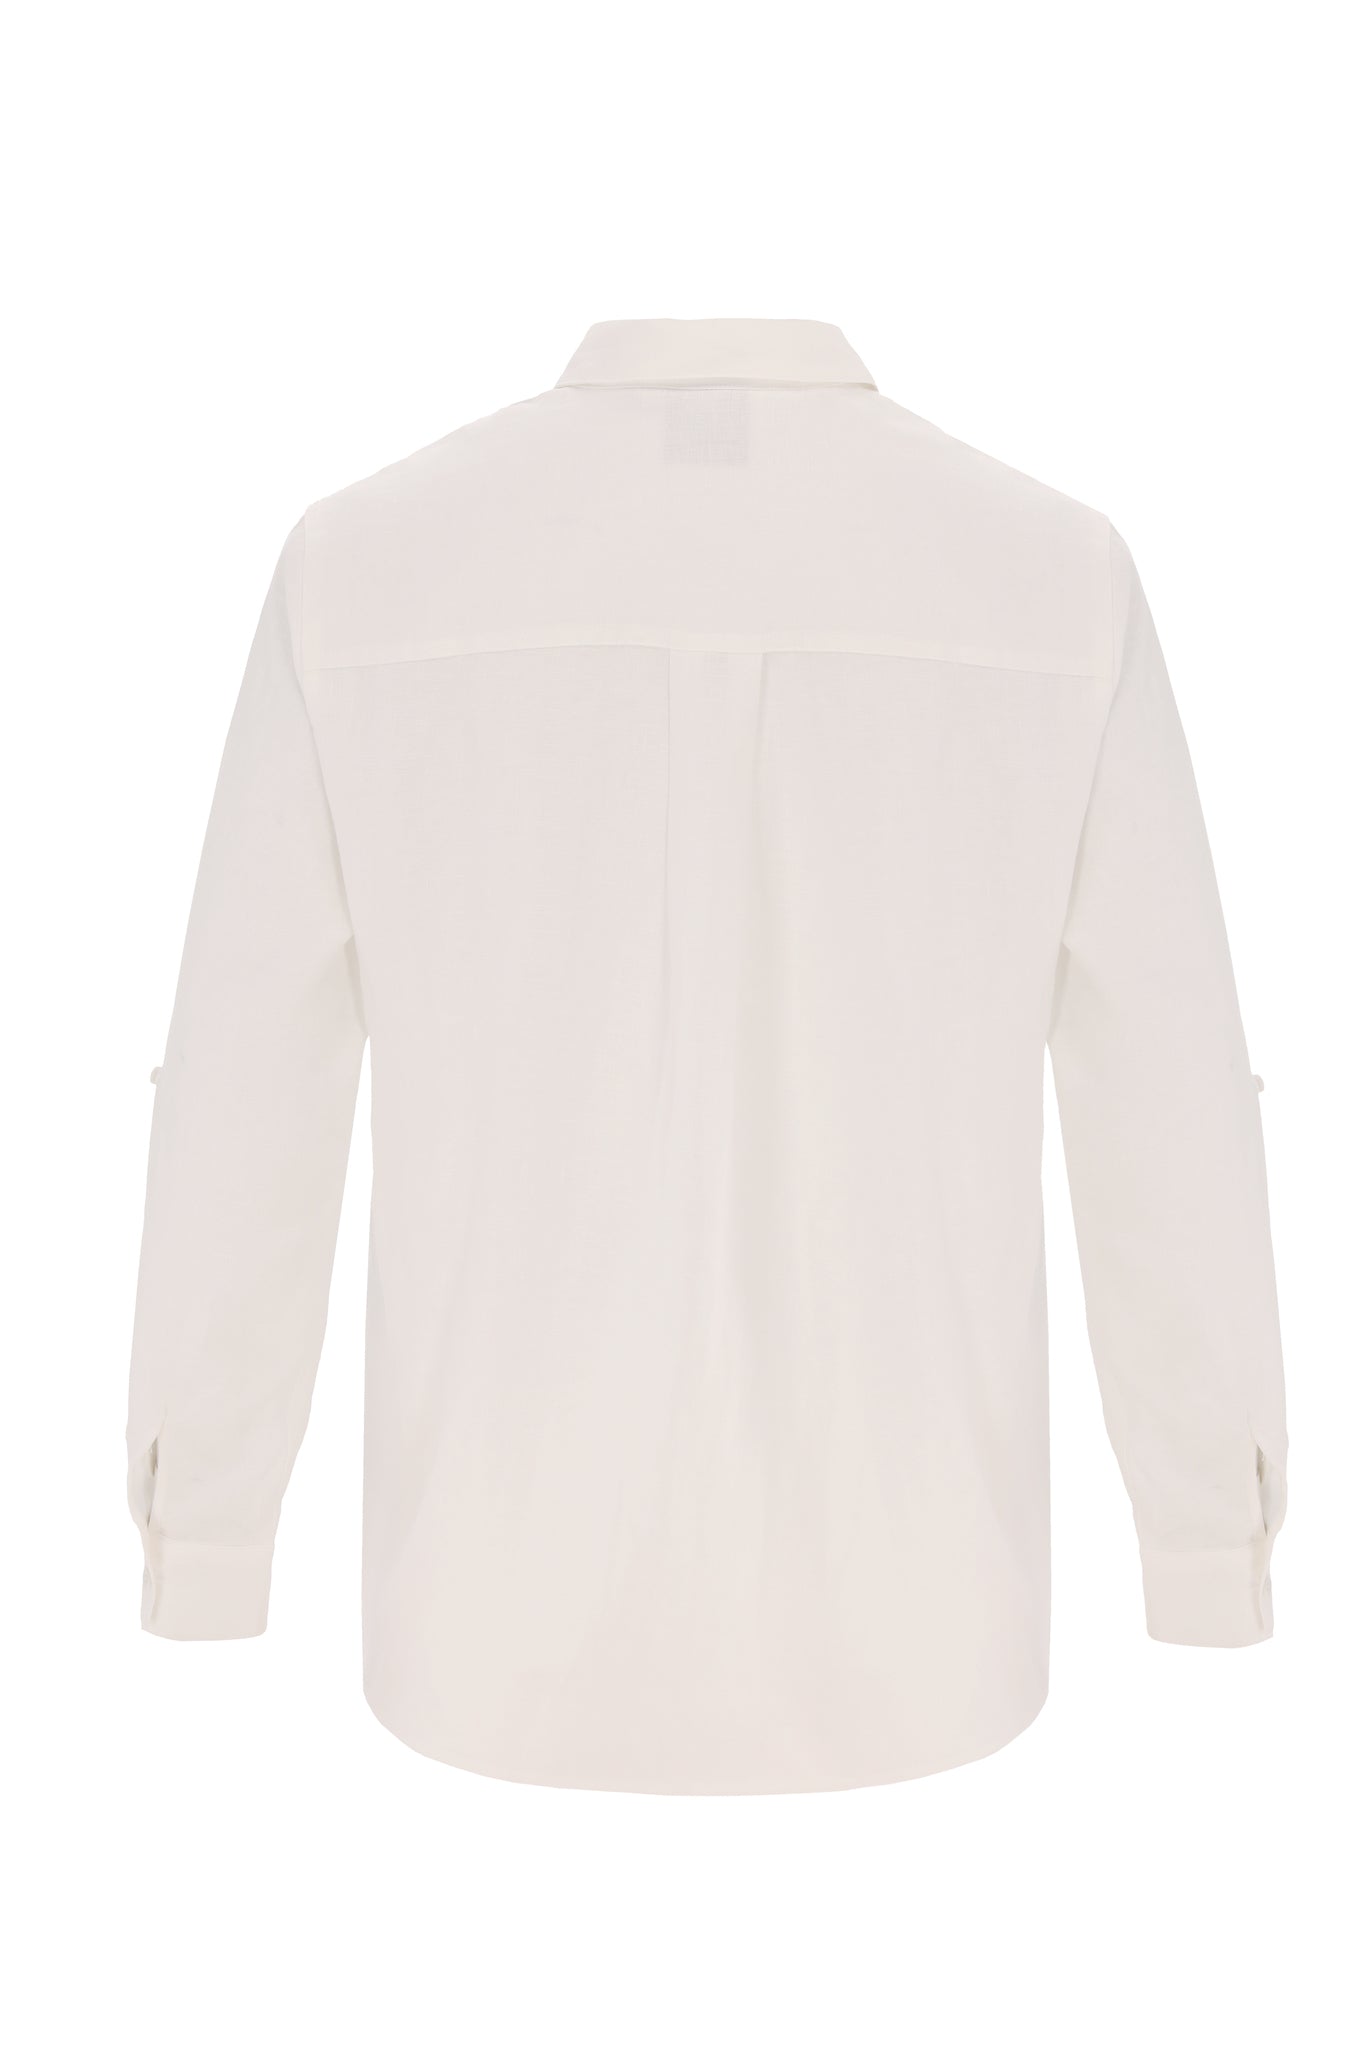 Men Linen Shirt off white